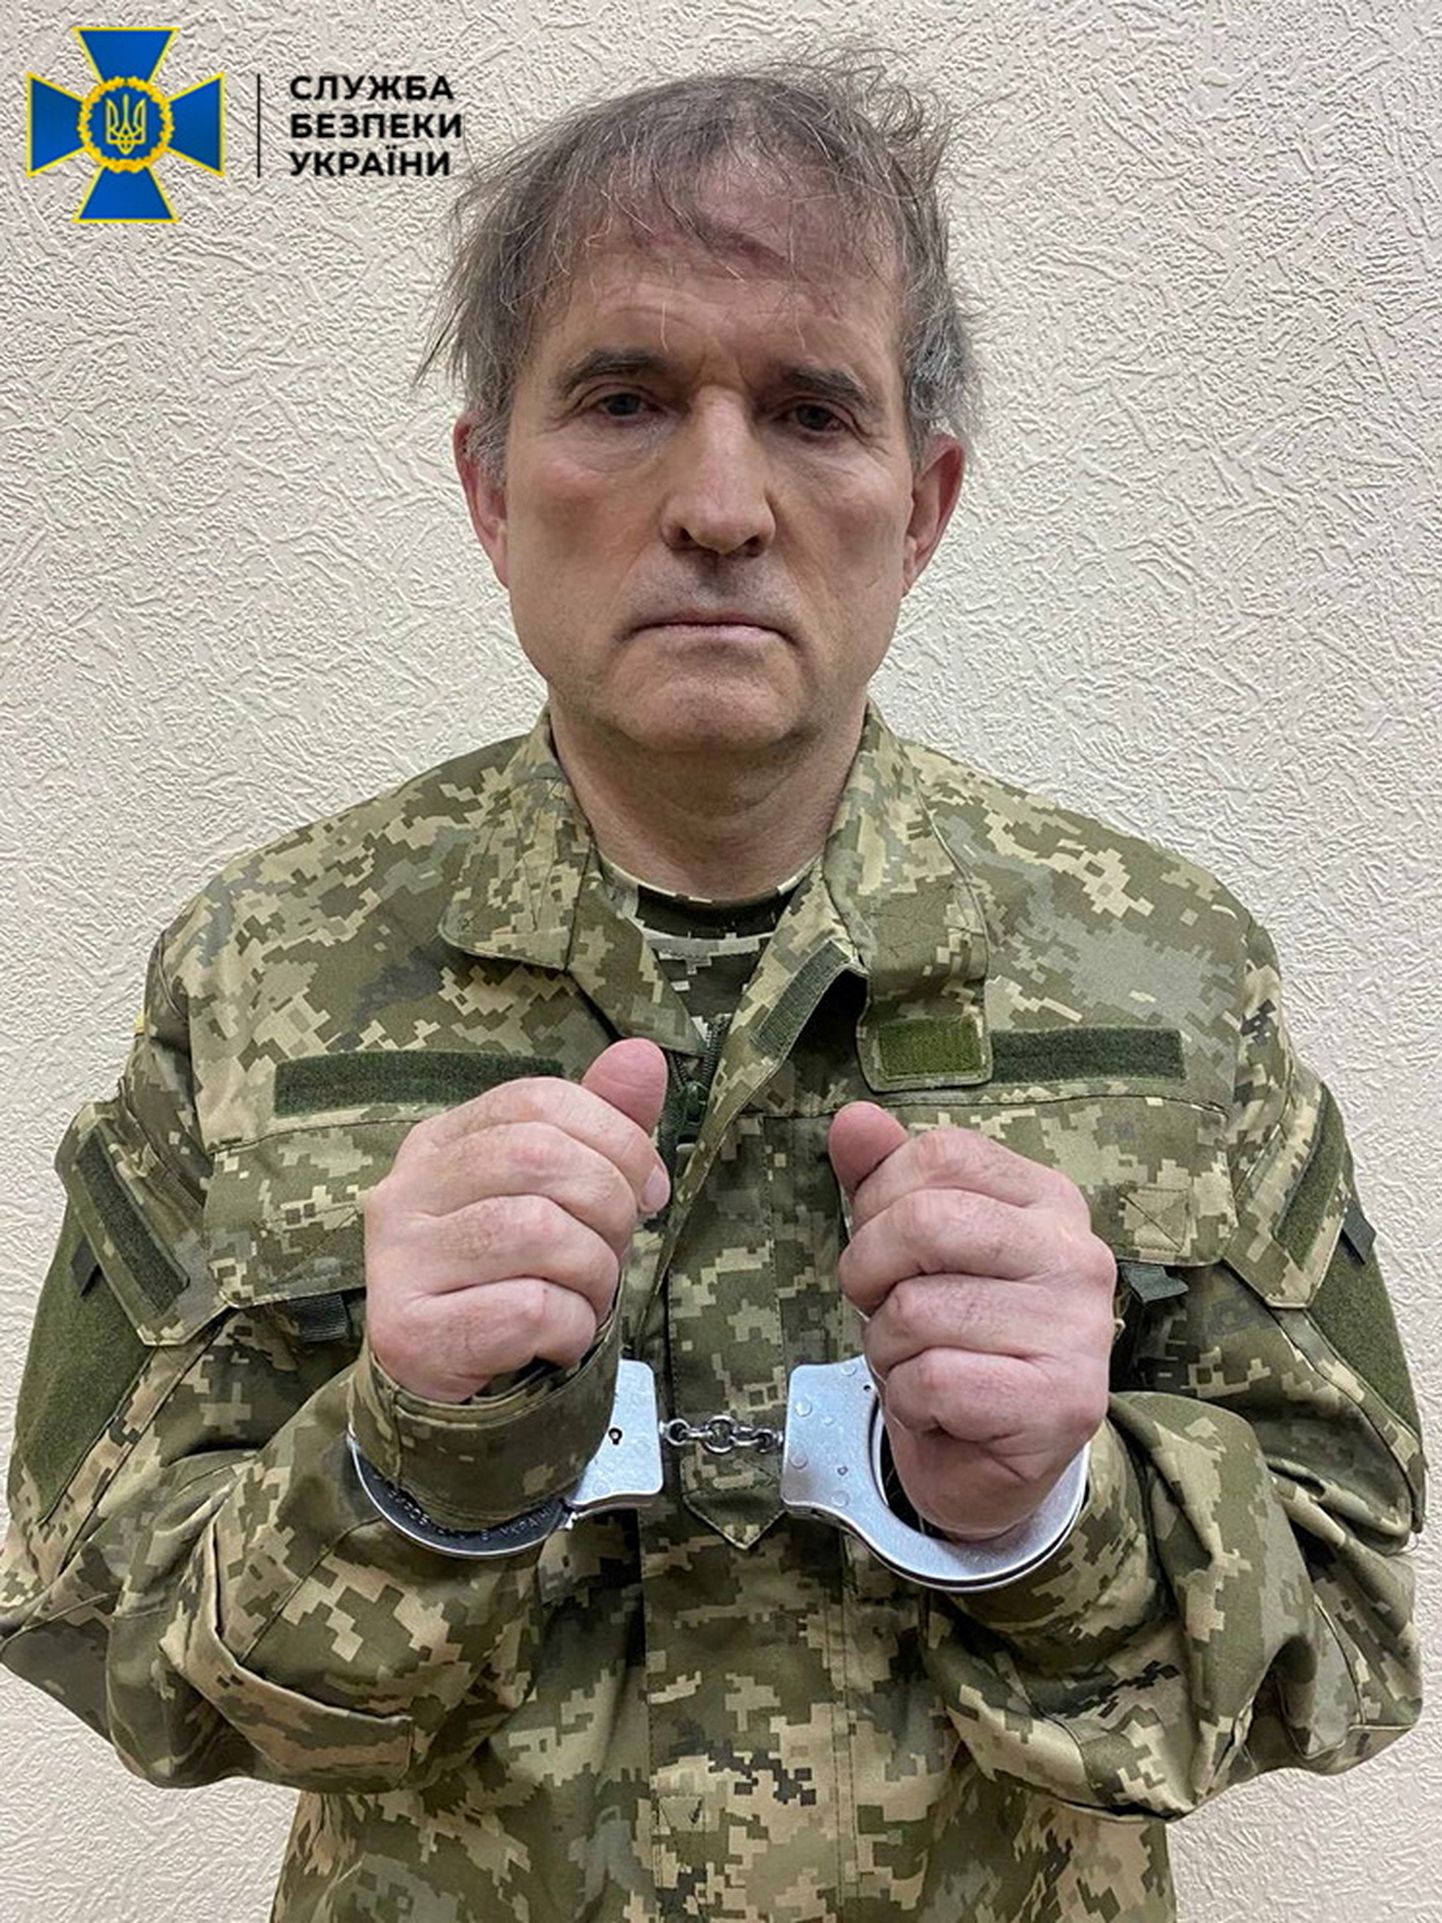 Ukrainā aizturētais prokrieviskais politiķis Viktors Medvedčuks.